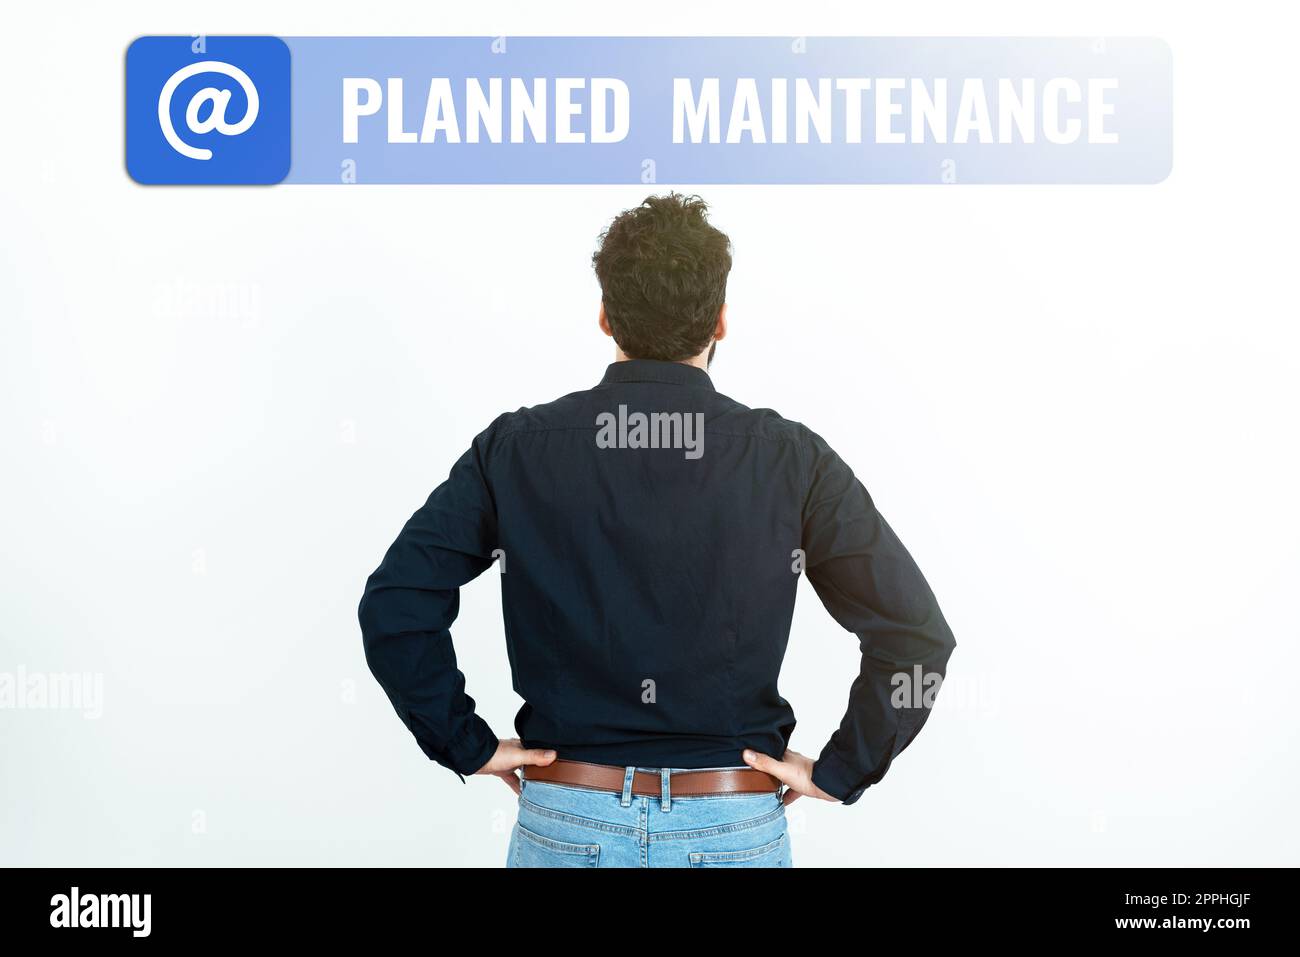 Text für Inspiration Planned Maintenance (geplante Wartung). Internet Concept Check-ups werden regelmäßig geplant Stockfoto